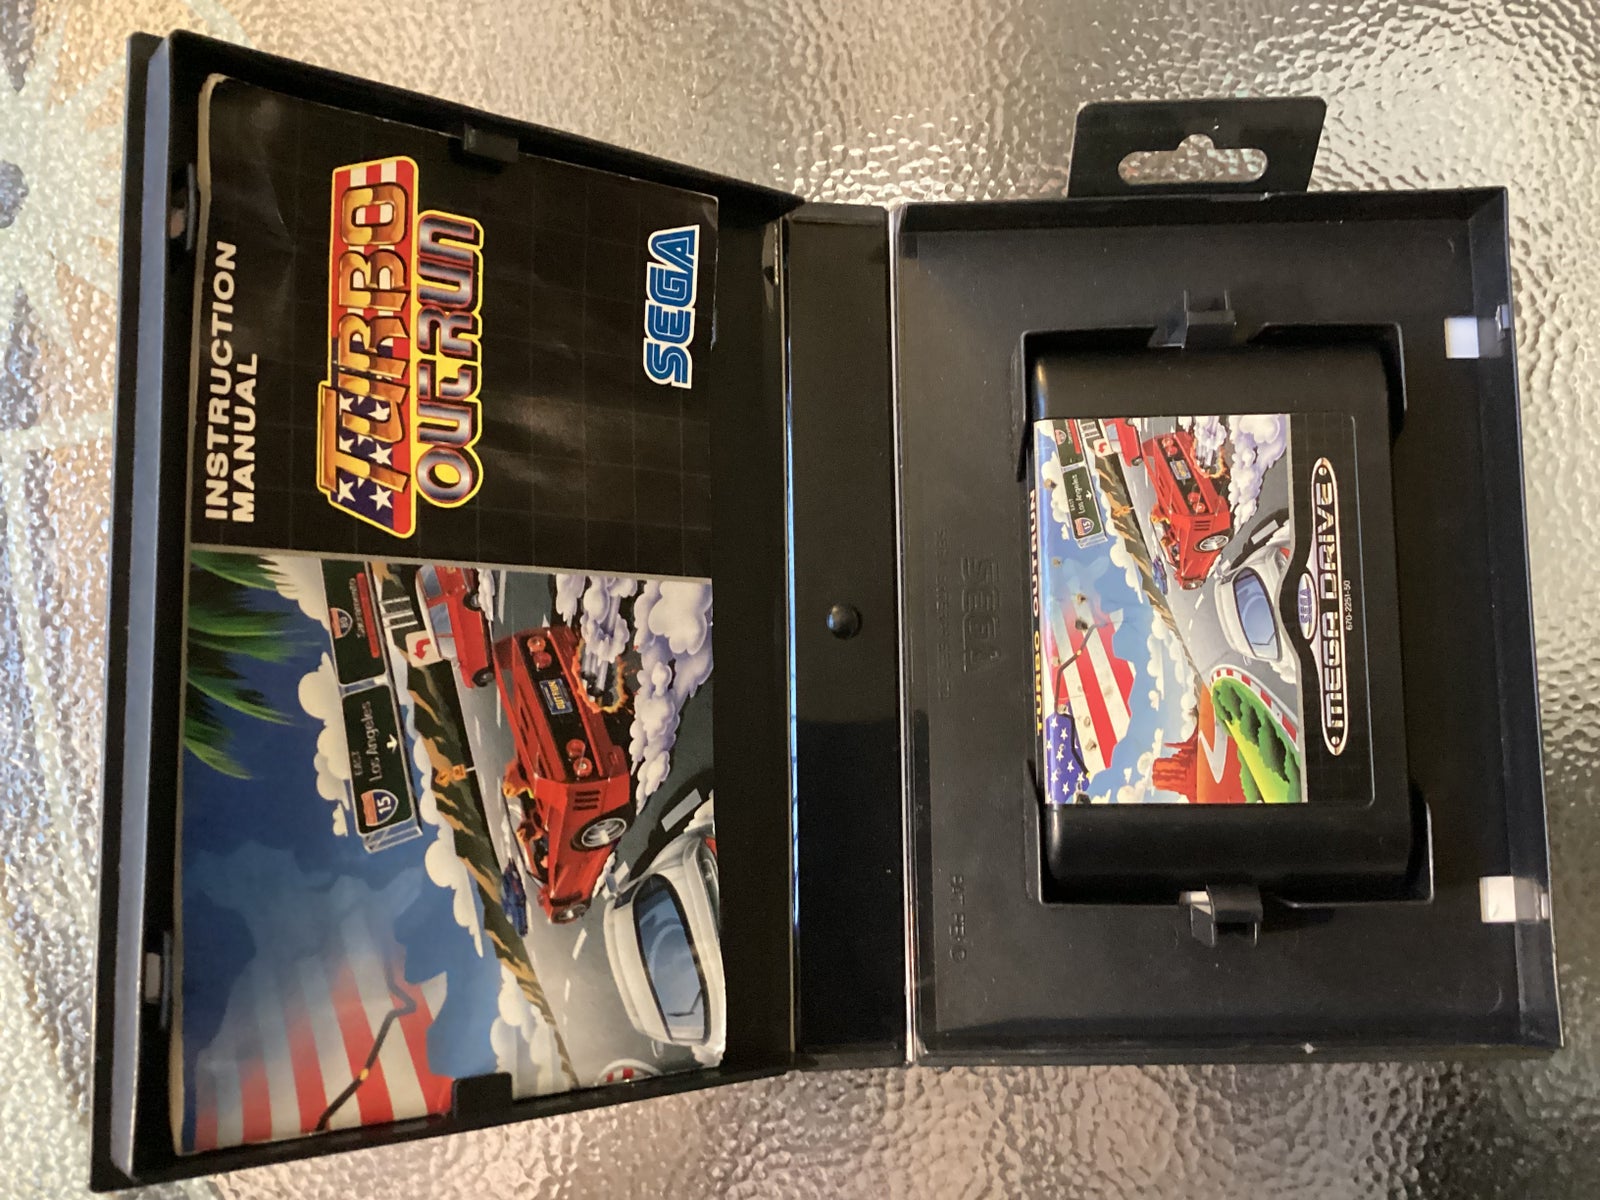 Turbo Outrun, Sega Megadrive